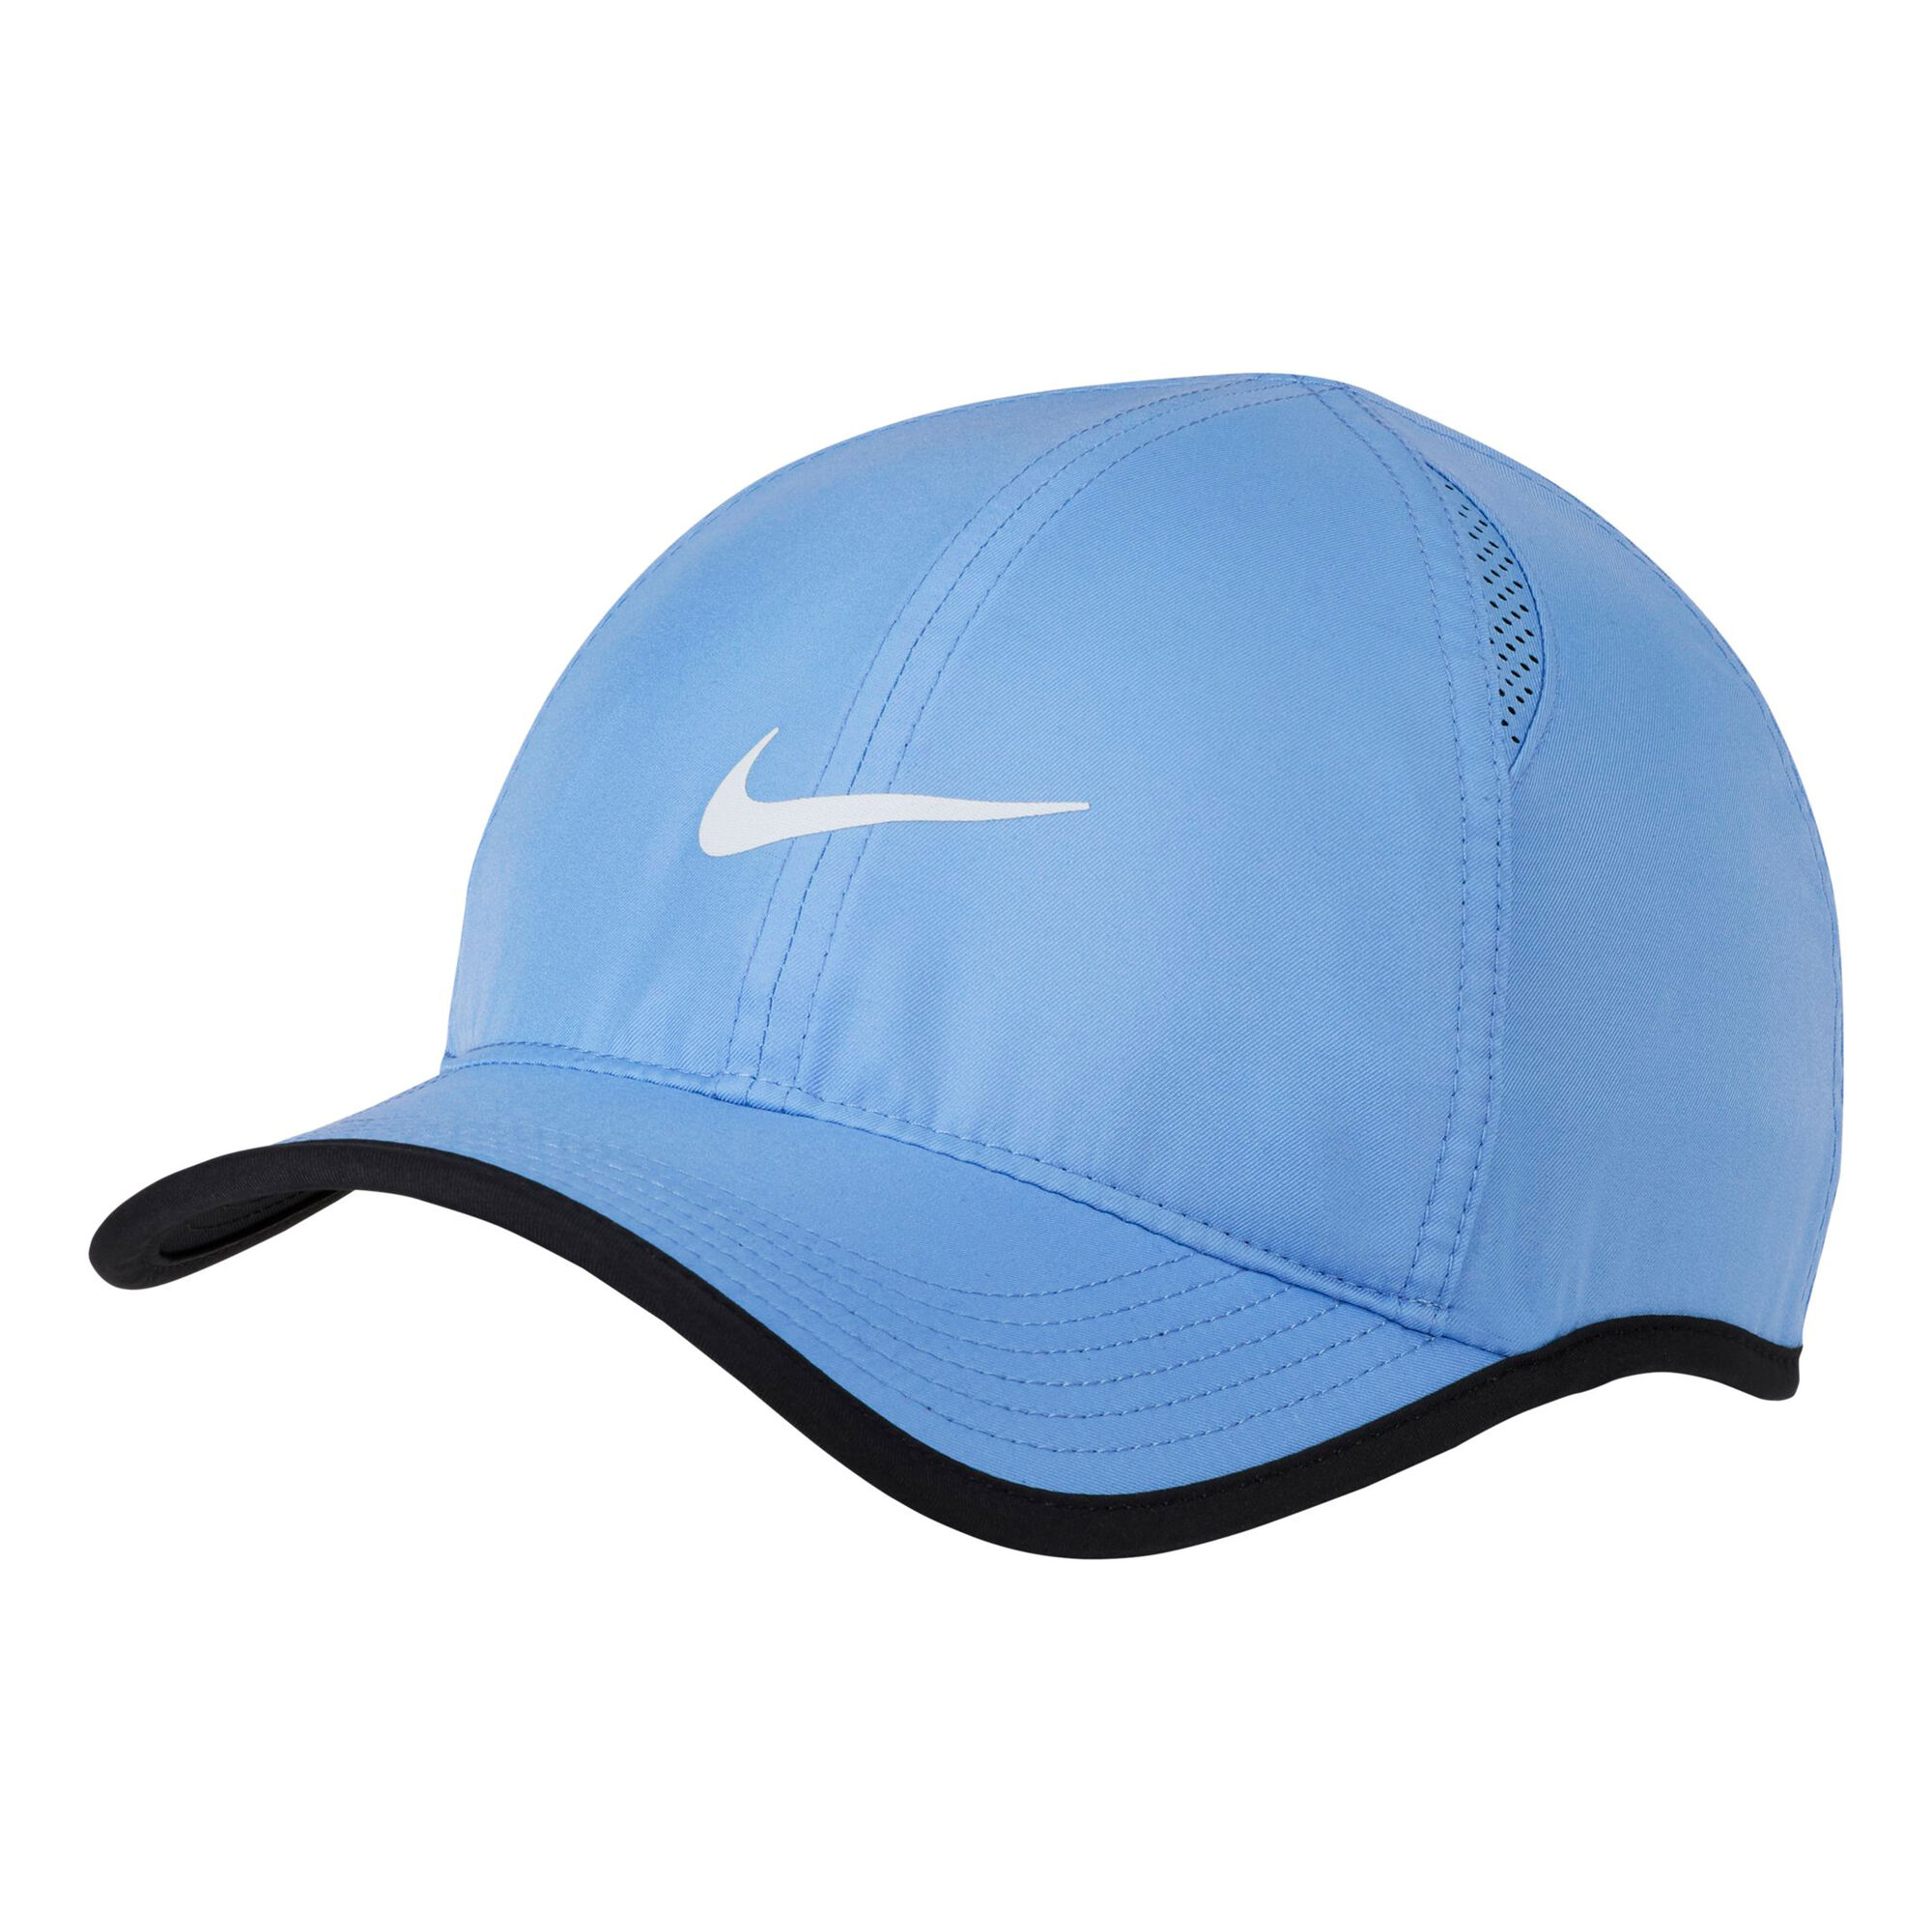 Jeg accepterer det Kano affældige buy Nike Court Aerobill Featherlight Cap - Light Blue, White online |  Tennis-Point